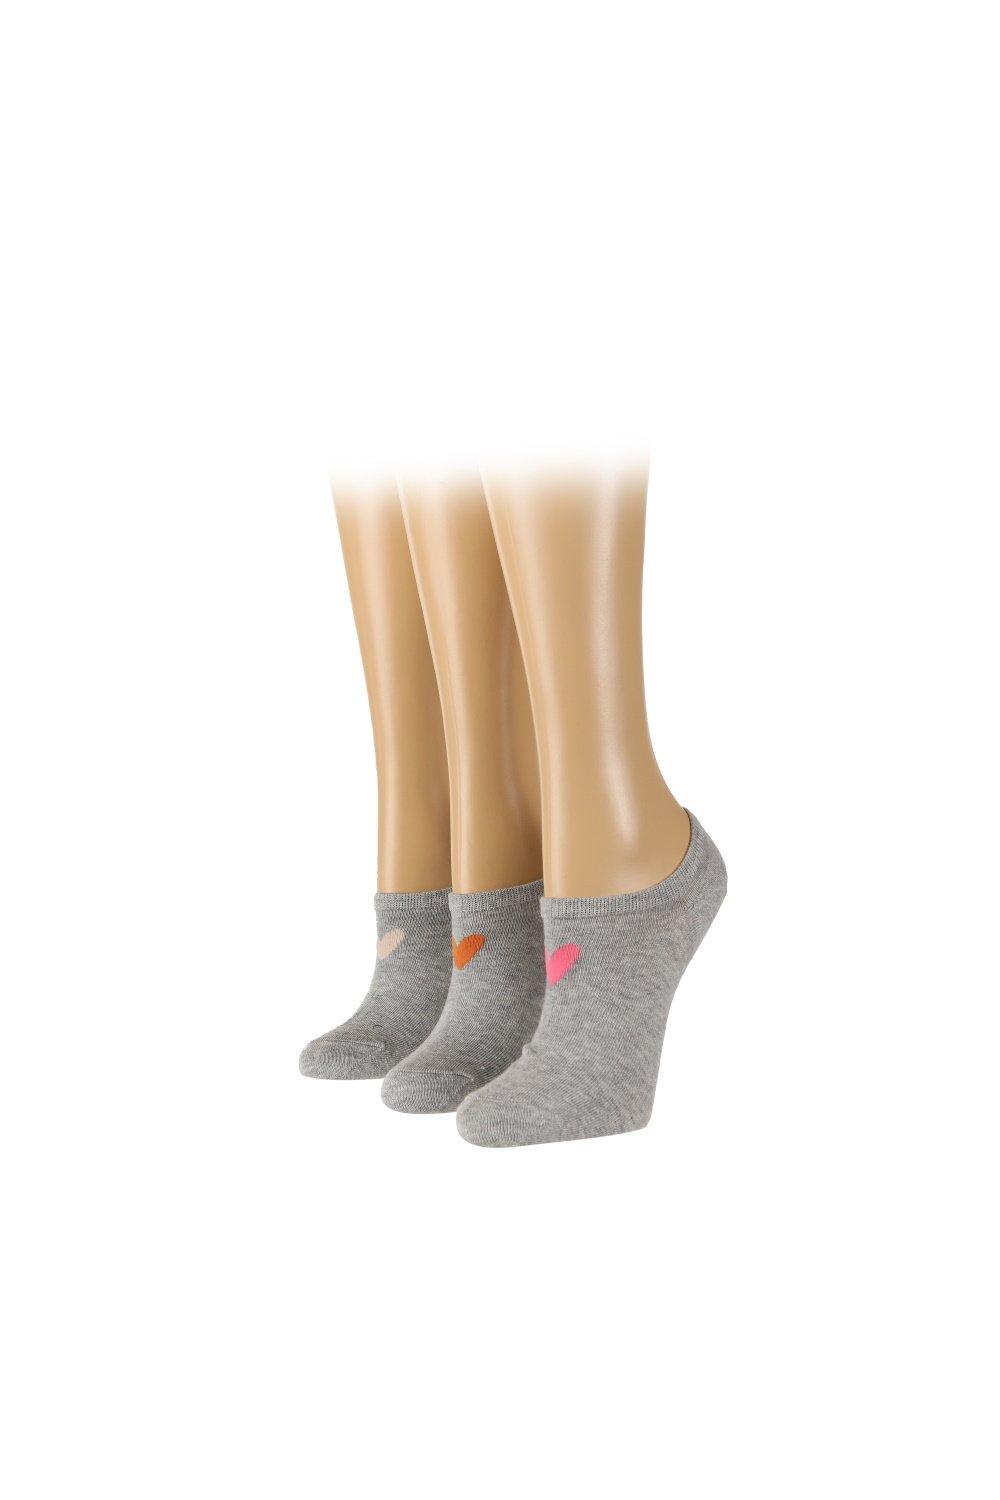 3 Pair Pack Plain Trainer Liner Socks